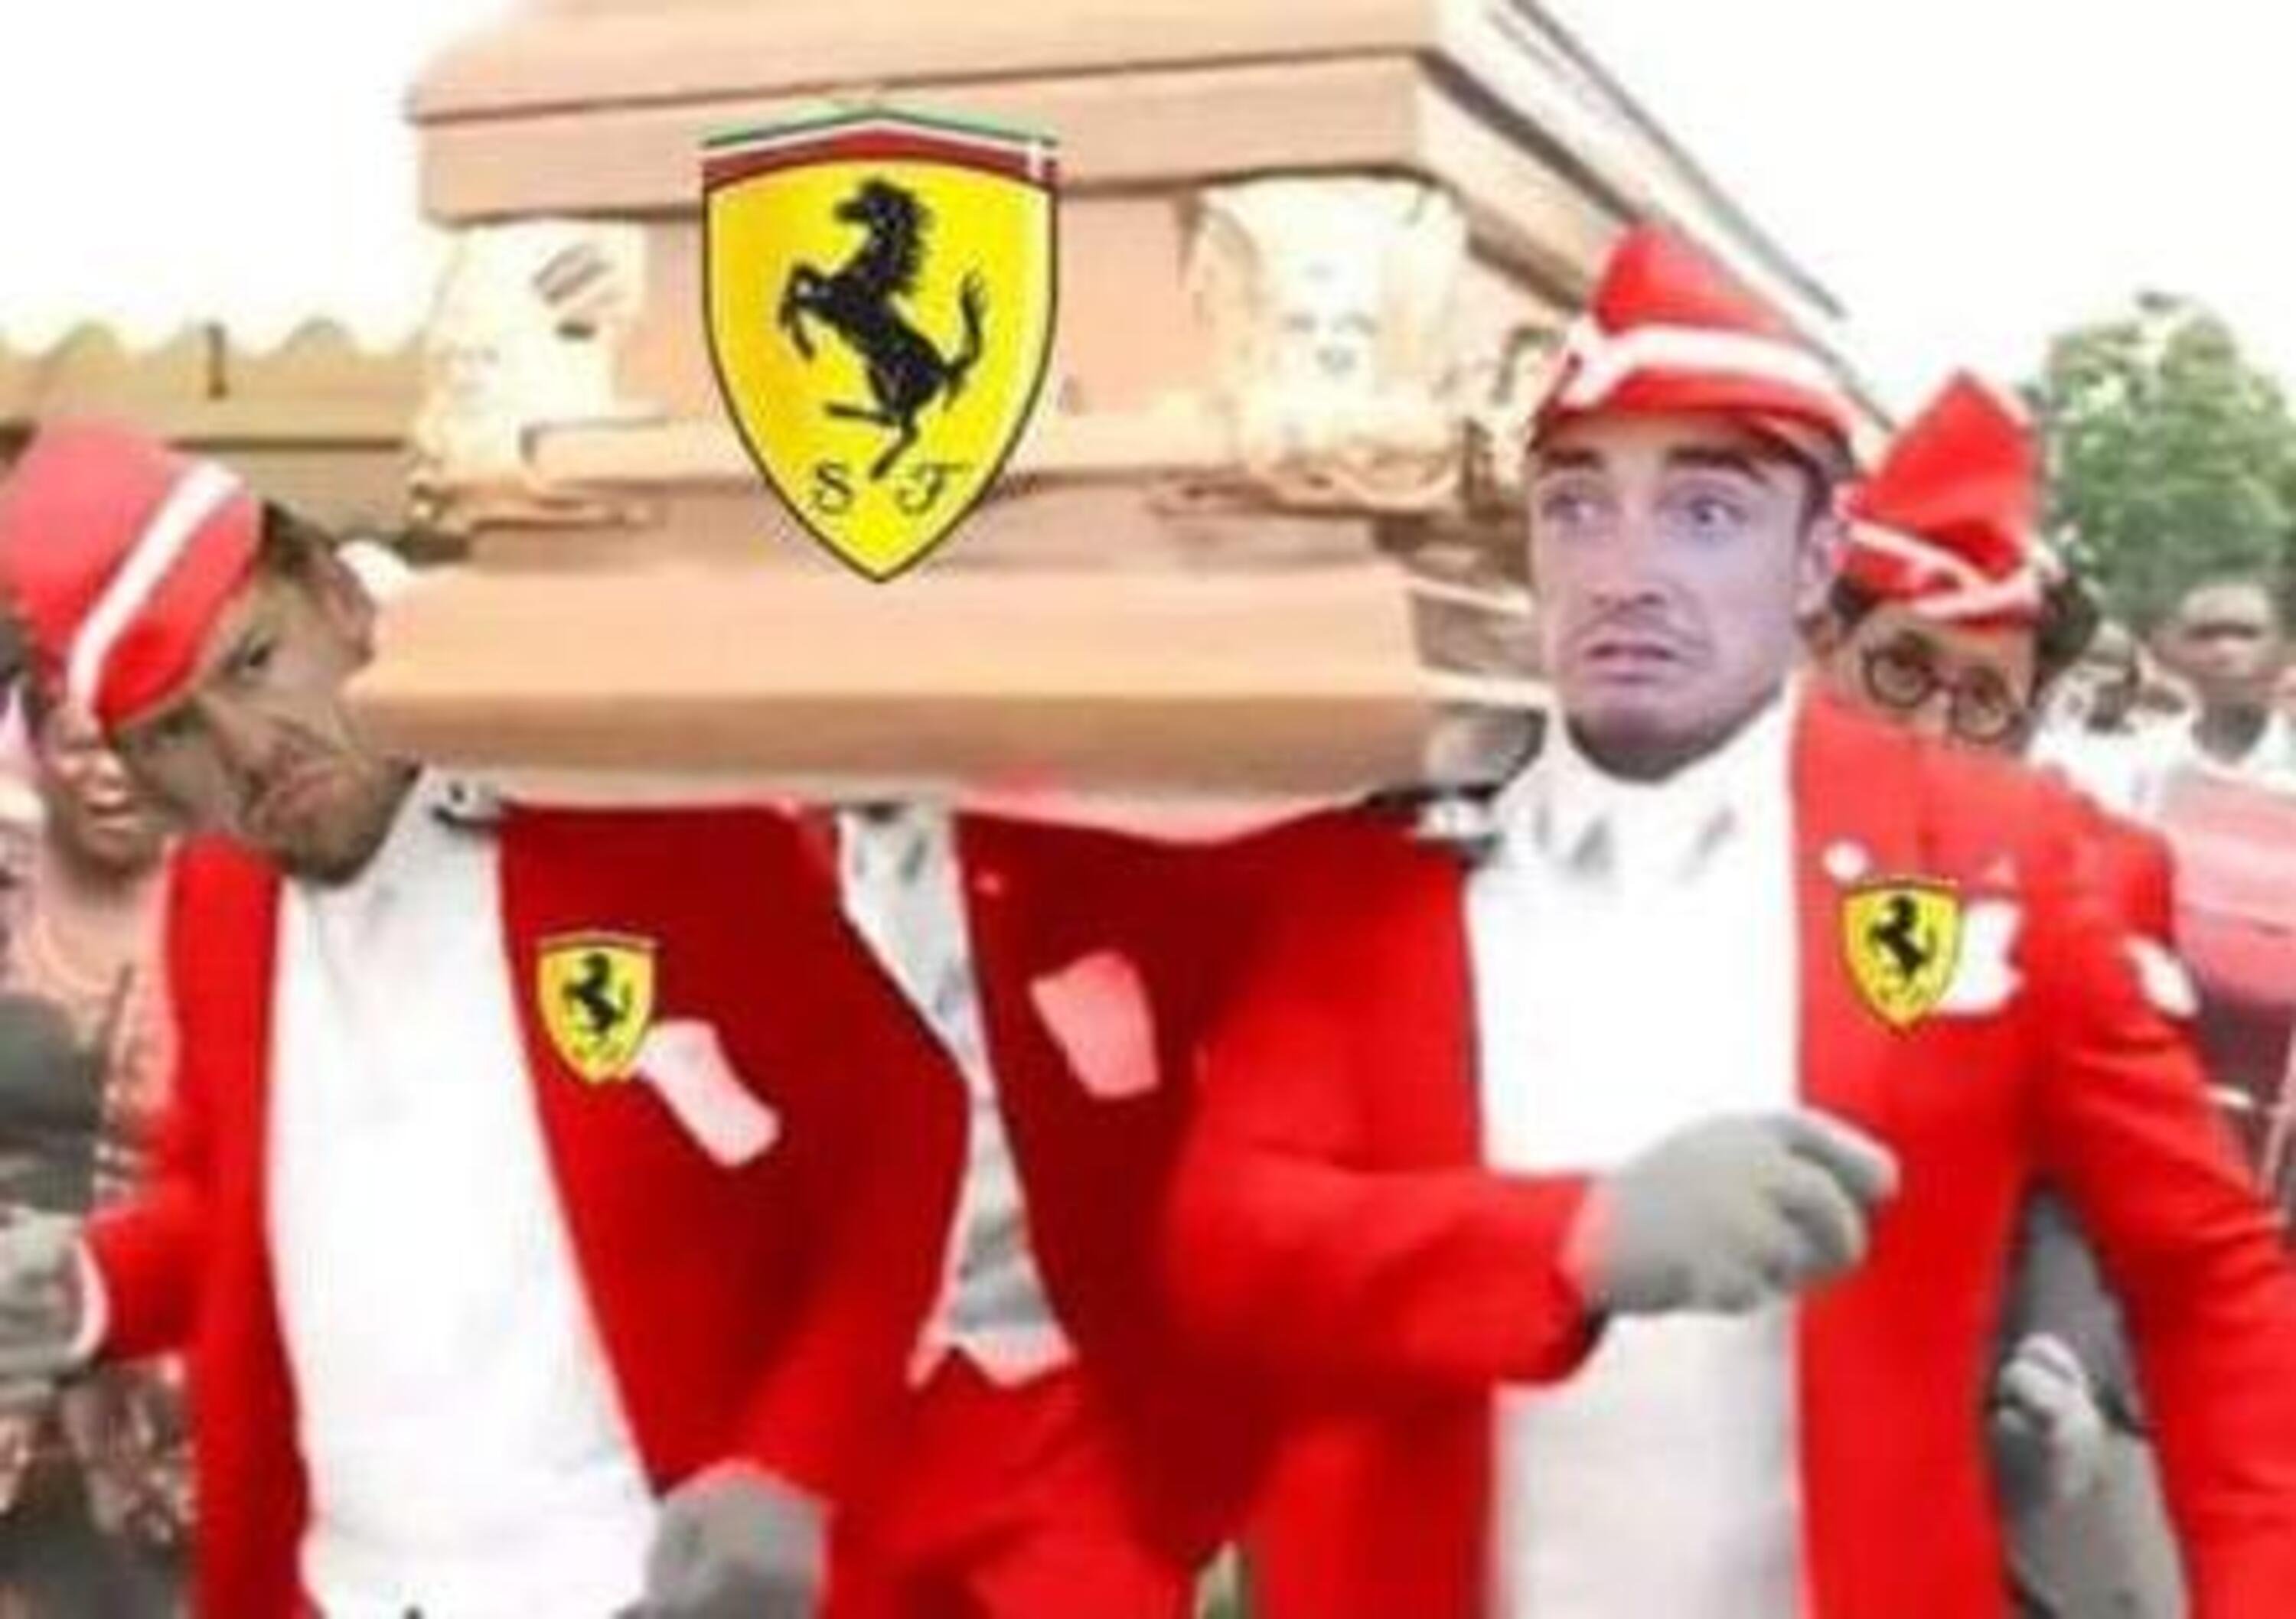 Disastro Ferrari in Formula 1: sui social &egrave; tempesta di meme [FOTOGALLERY]